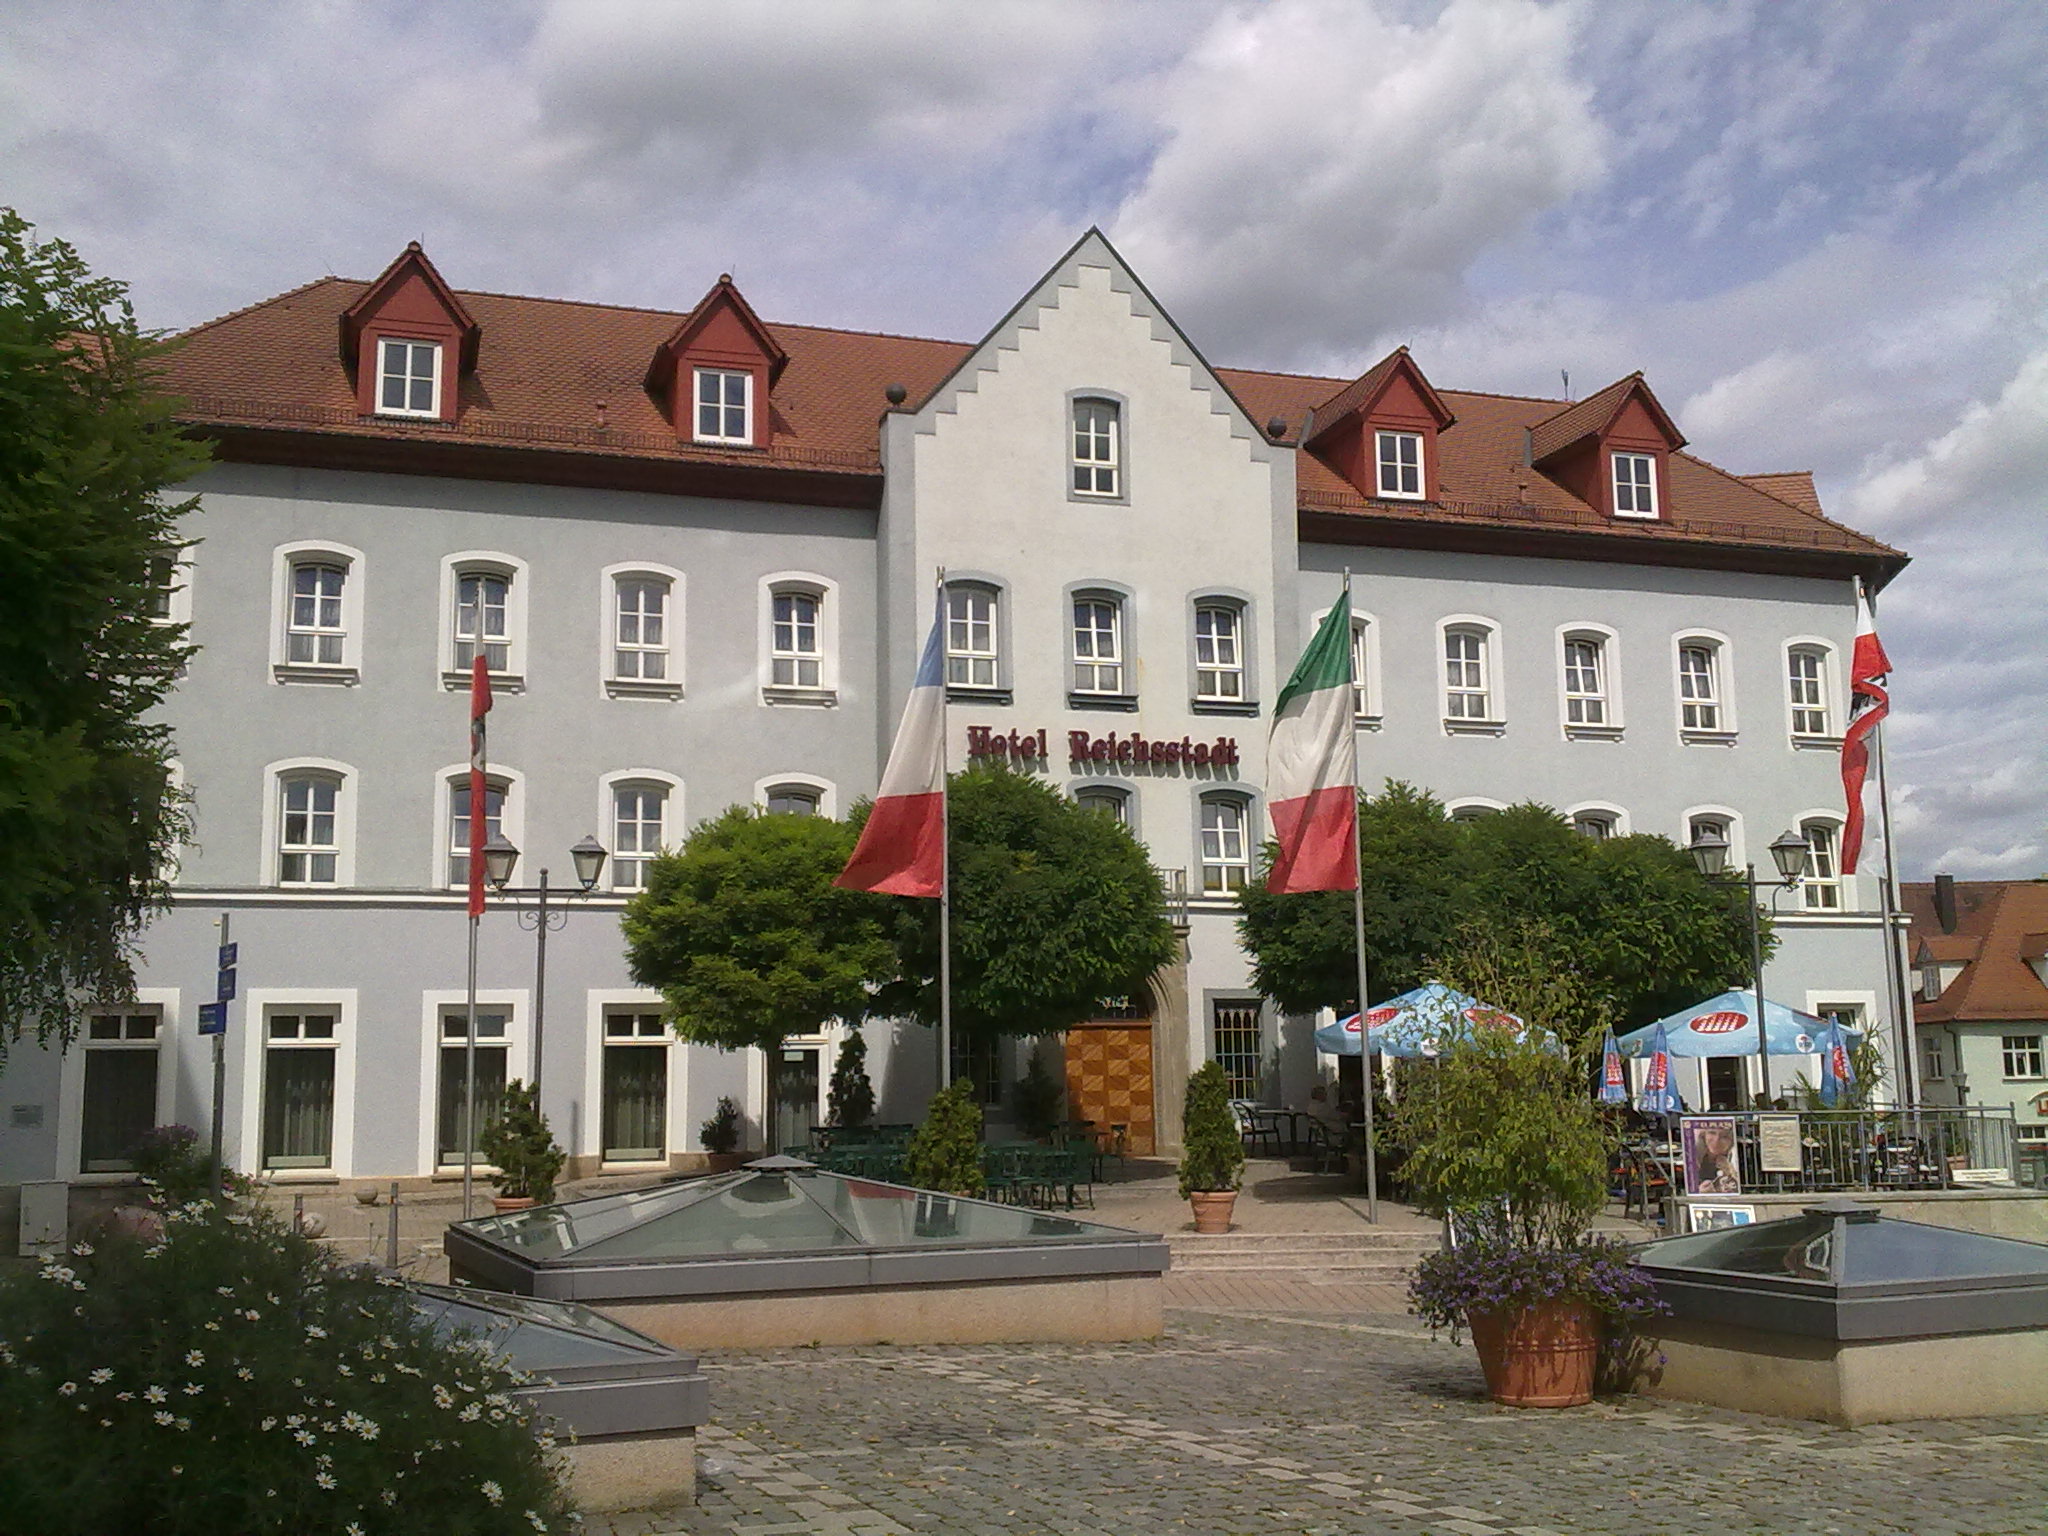 Hotel Reichsstadt